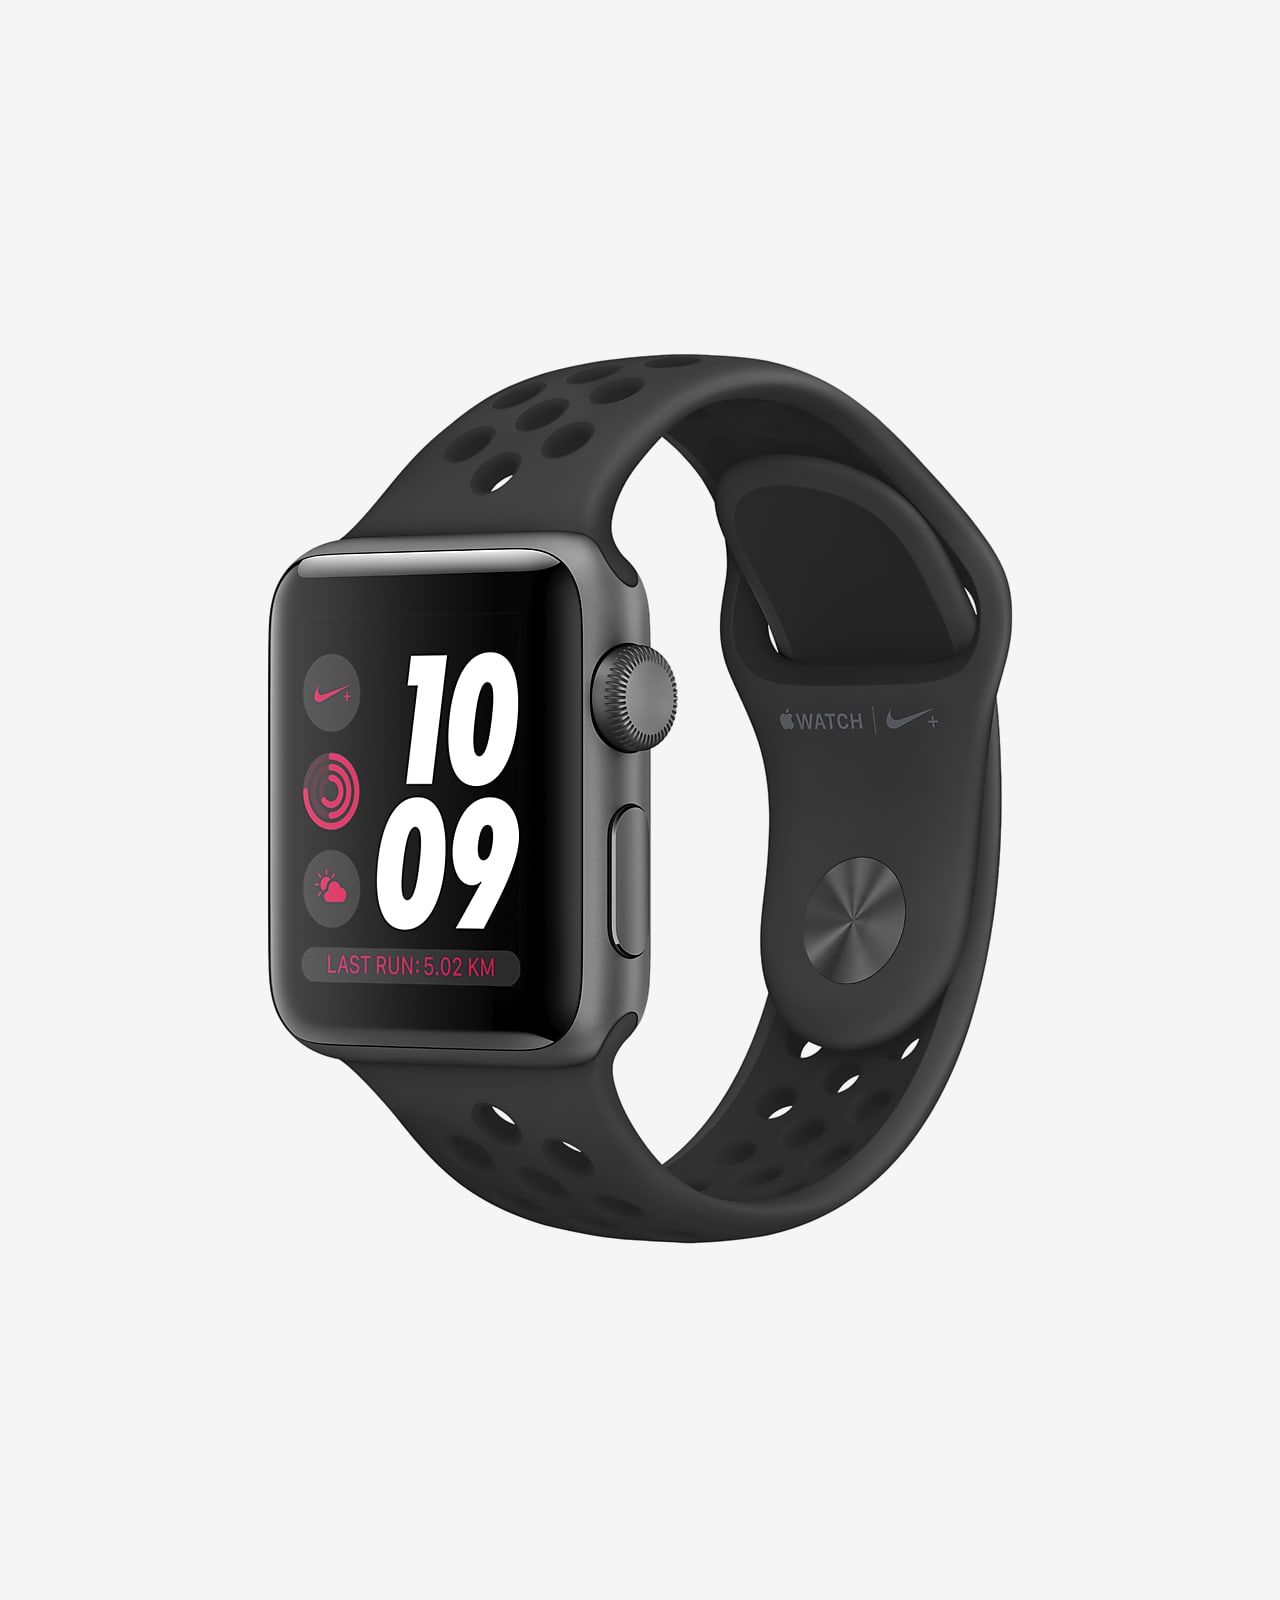 Apple Watch Series 3 (38mm) Open Box Running Watch. Nike PT